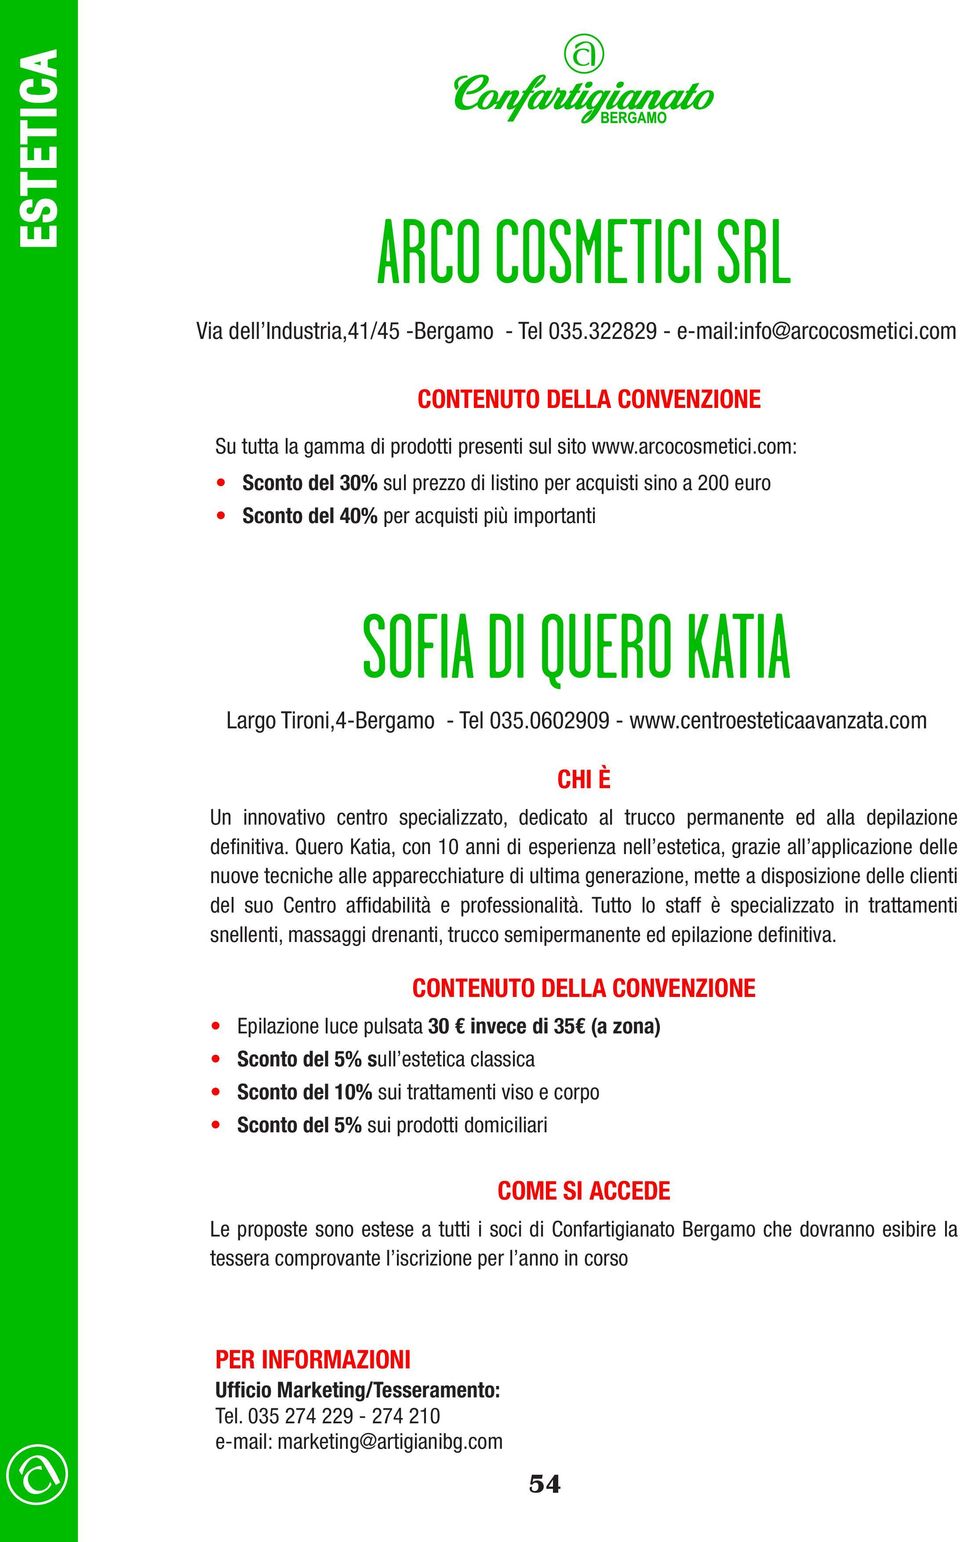 com: Sconto del 30% sul prezzo di listino per acquisti sino a 200 euro Sconto del 40% per acquisti più importanti SOFIA DI QUERO KATIA Largo Tironi,4-Bergamo - Tel 035.0602909 - www.